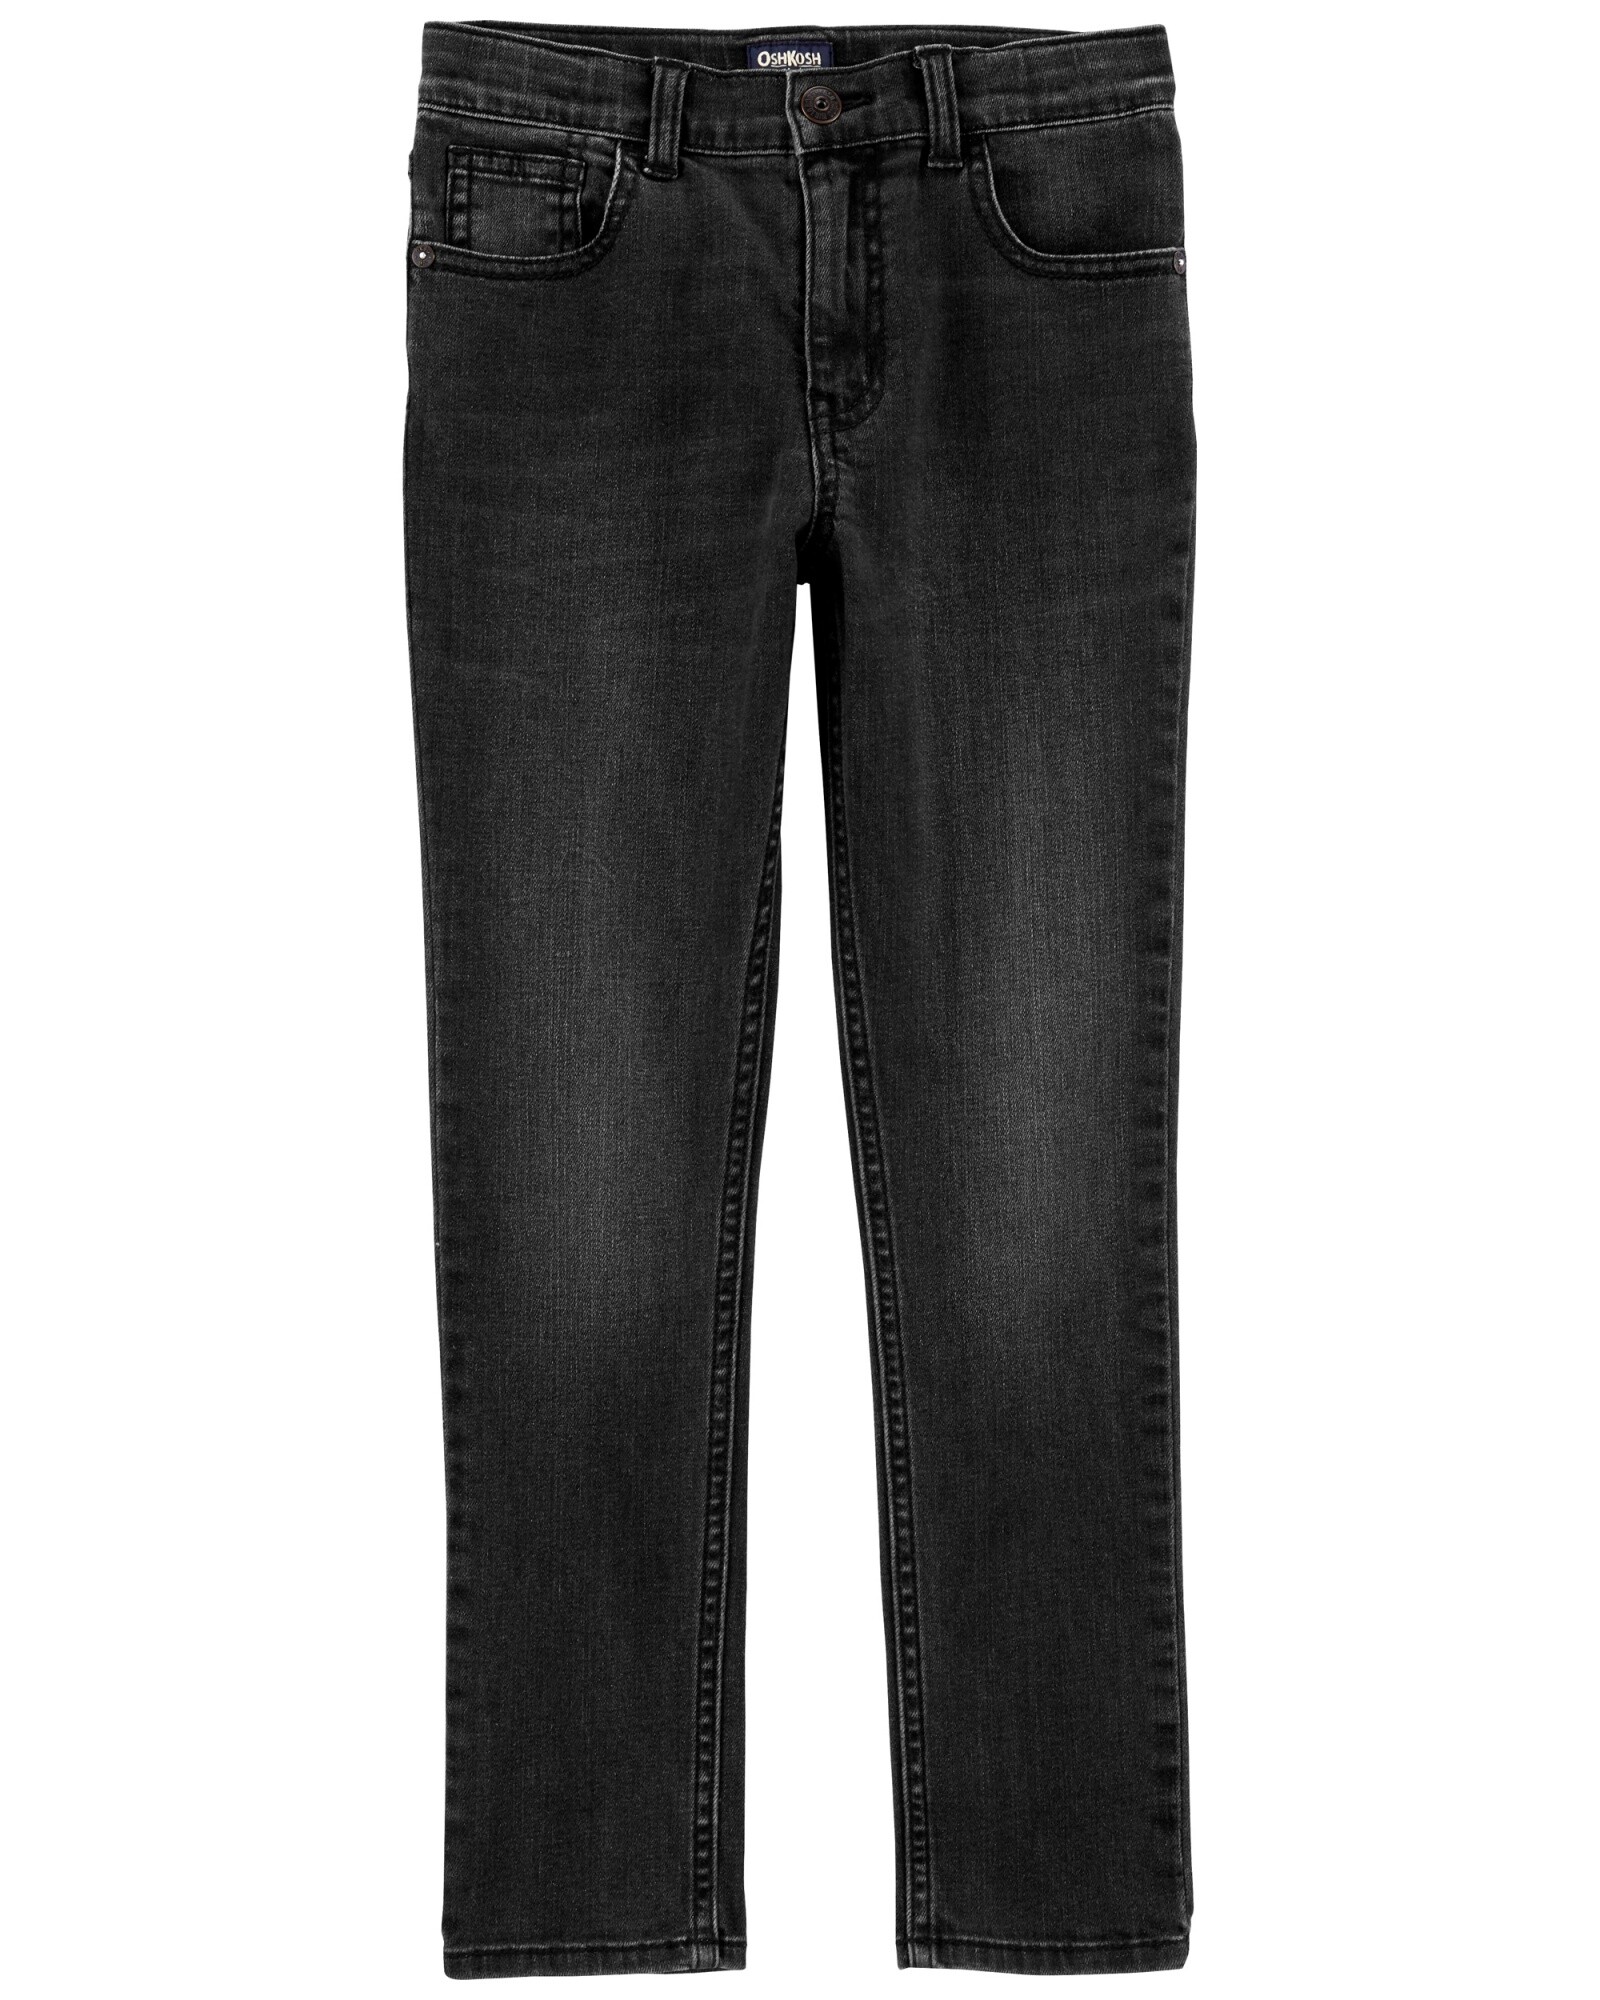 Pantalón de jean clásico, negro. Talles 4-14 Sin color